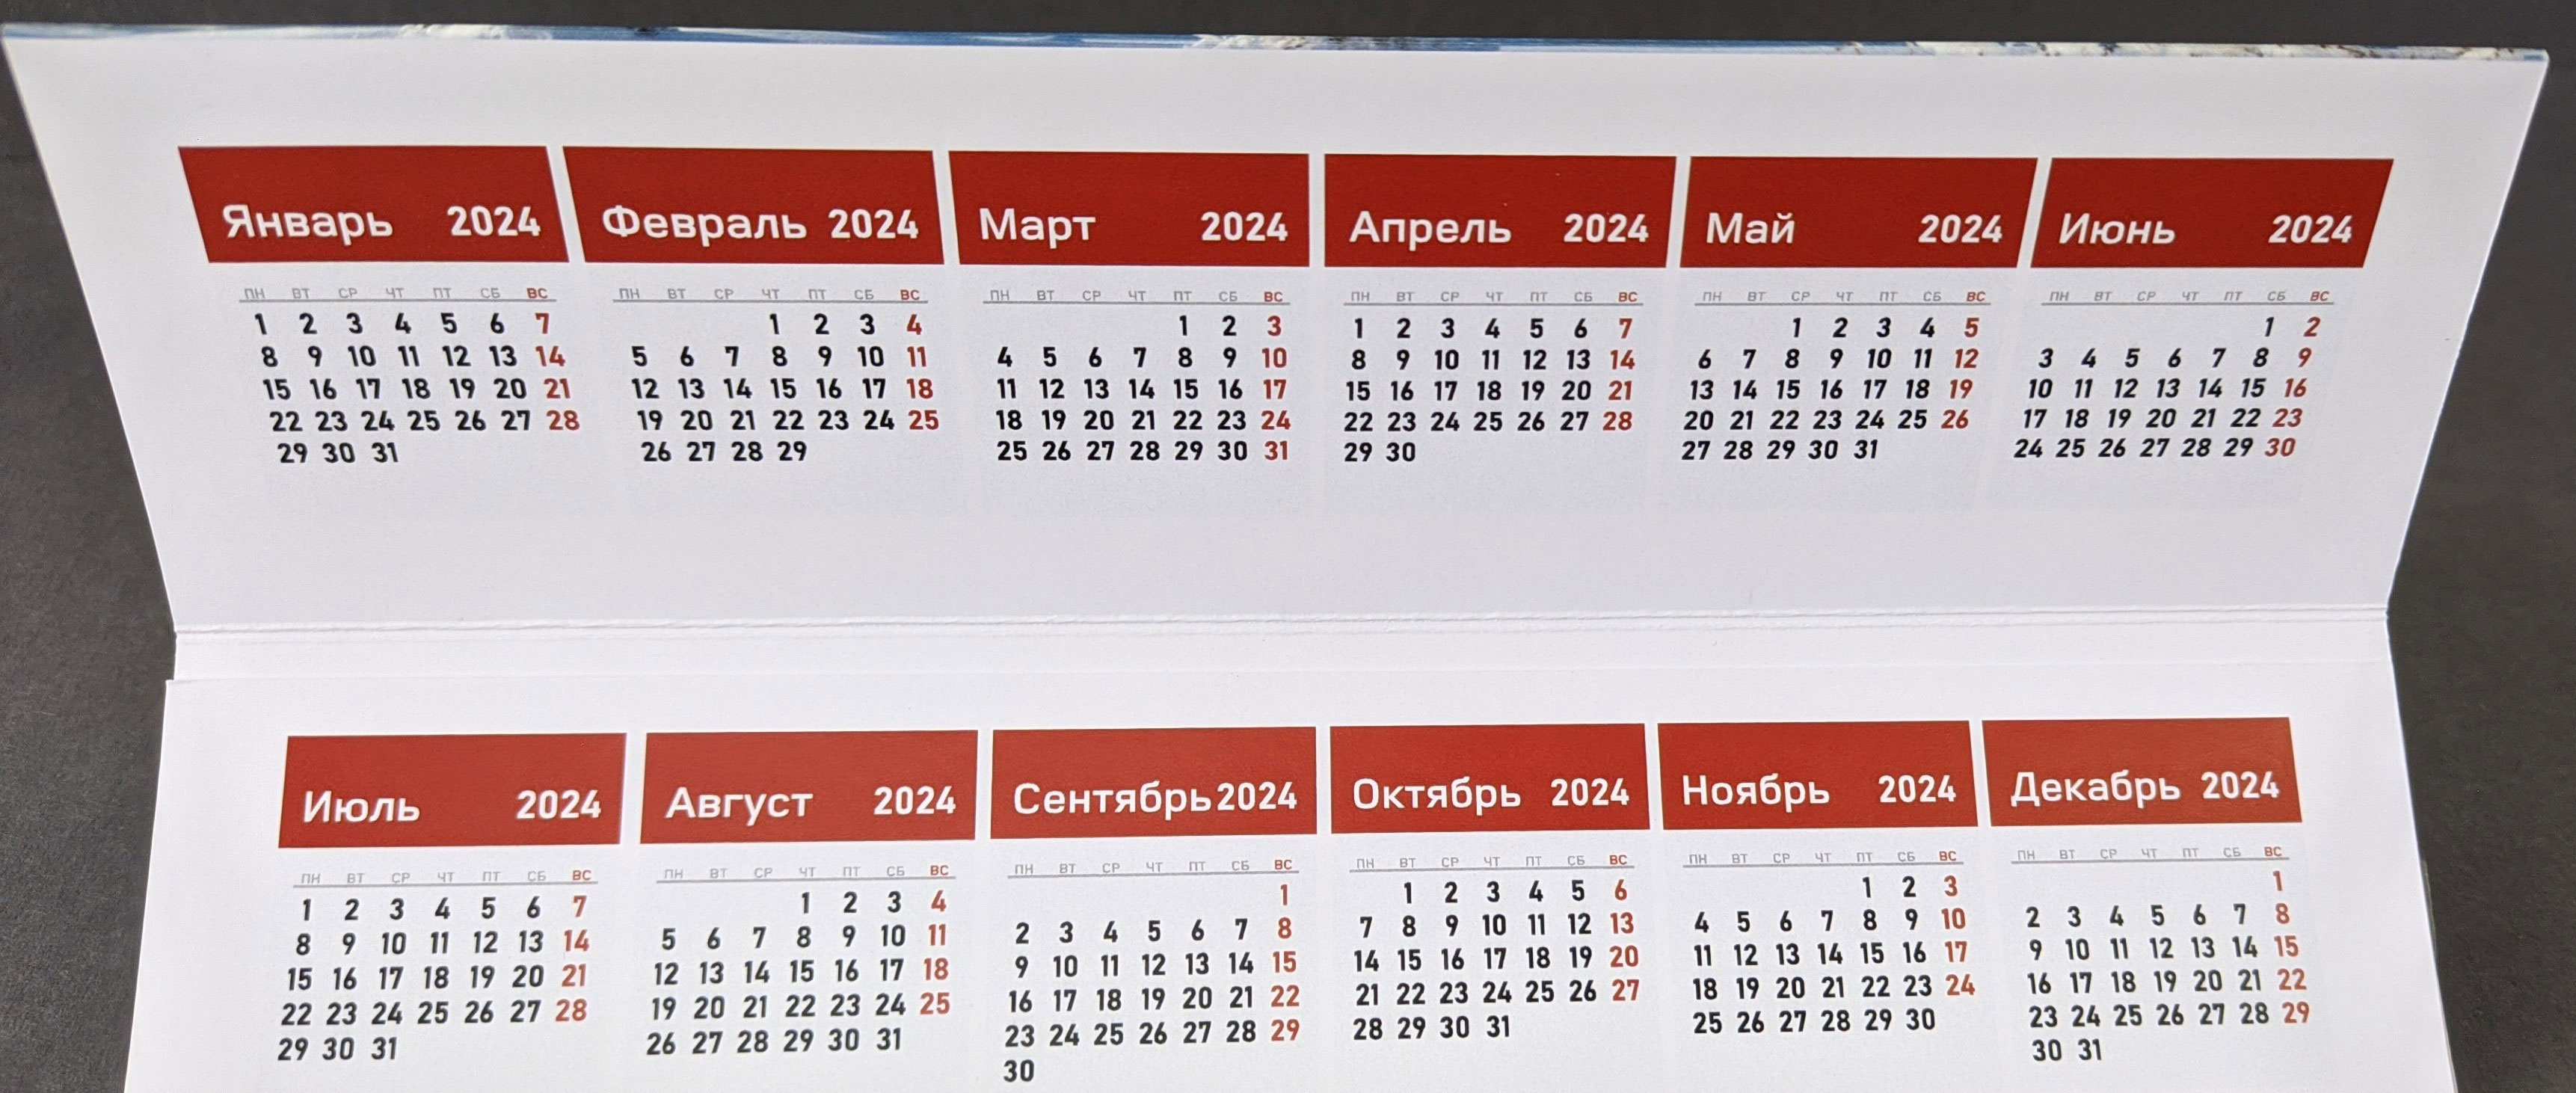 Календарь домик 2024 год. Календарь 2024 шаблон. Макет календаря на 2024 год. Календарь домик 2024. Календарь с 2023 по 2024.